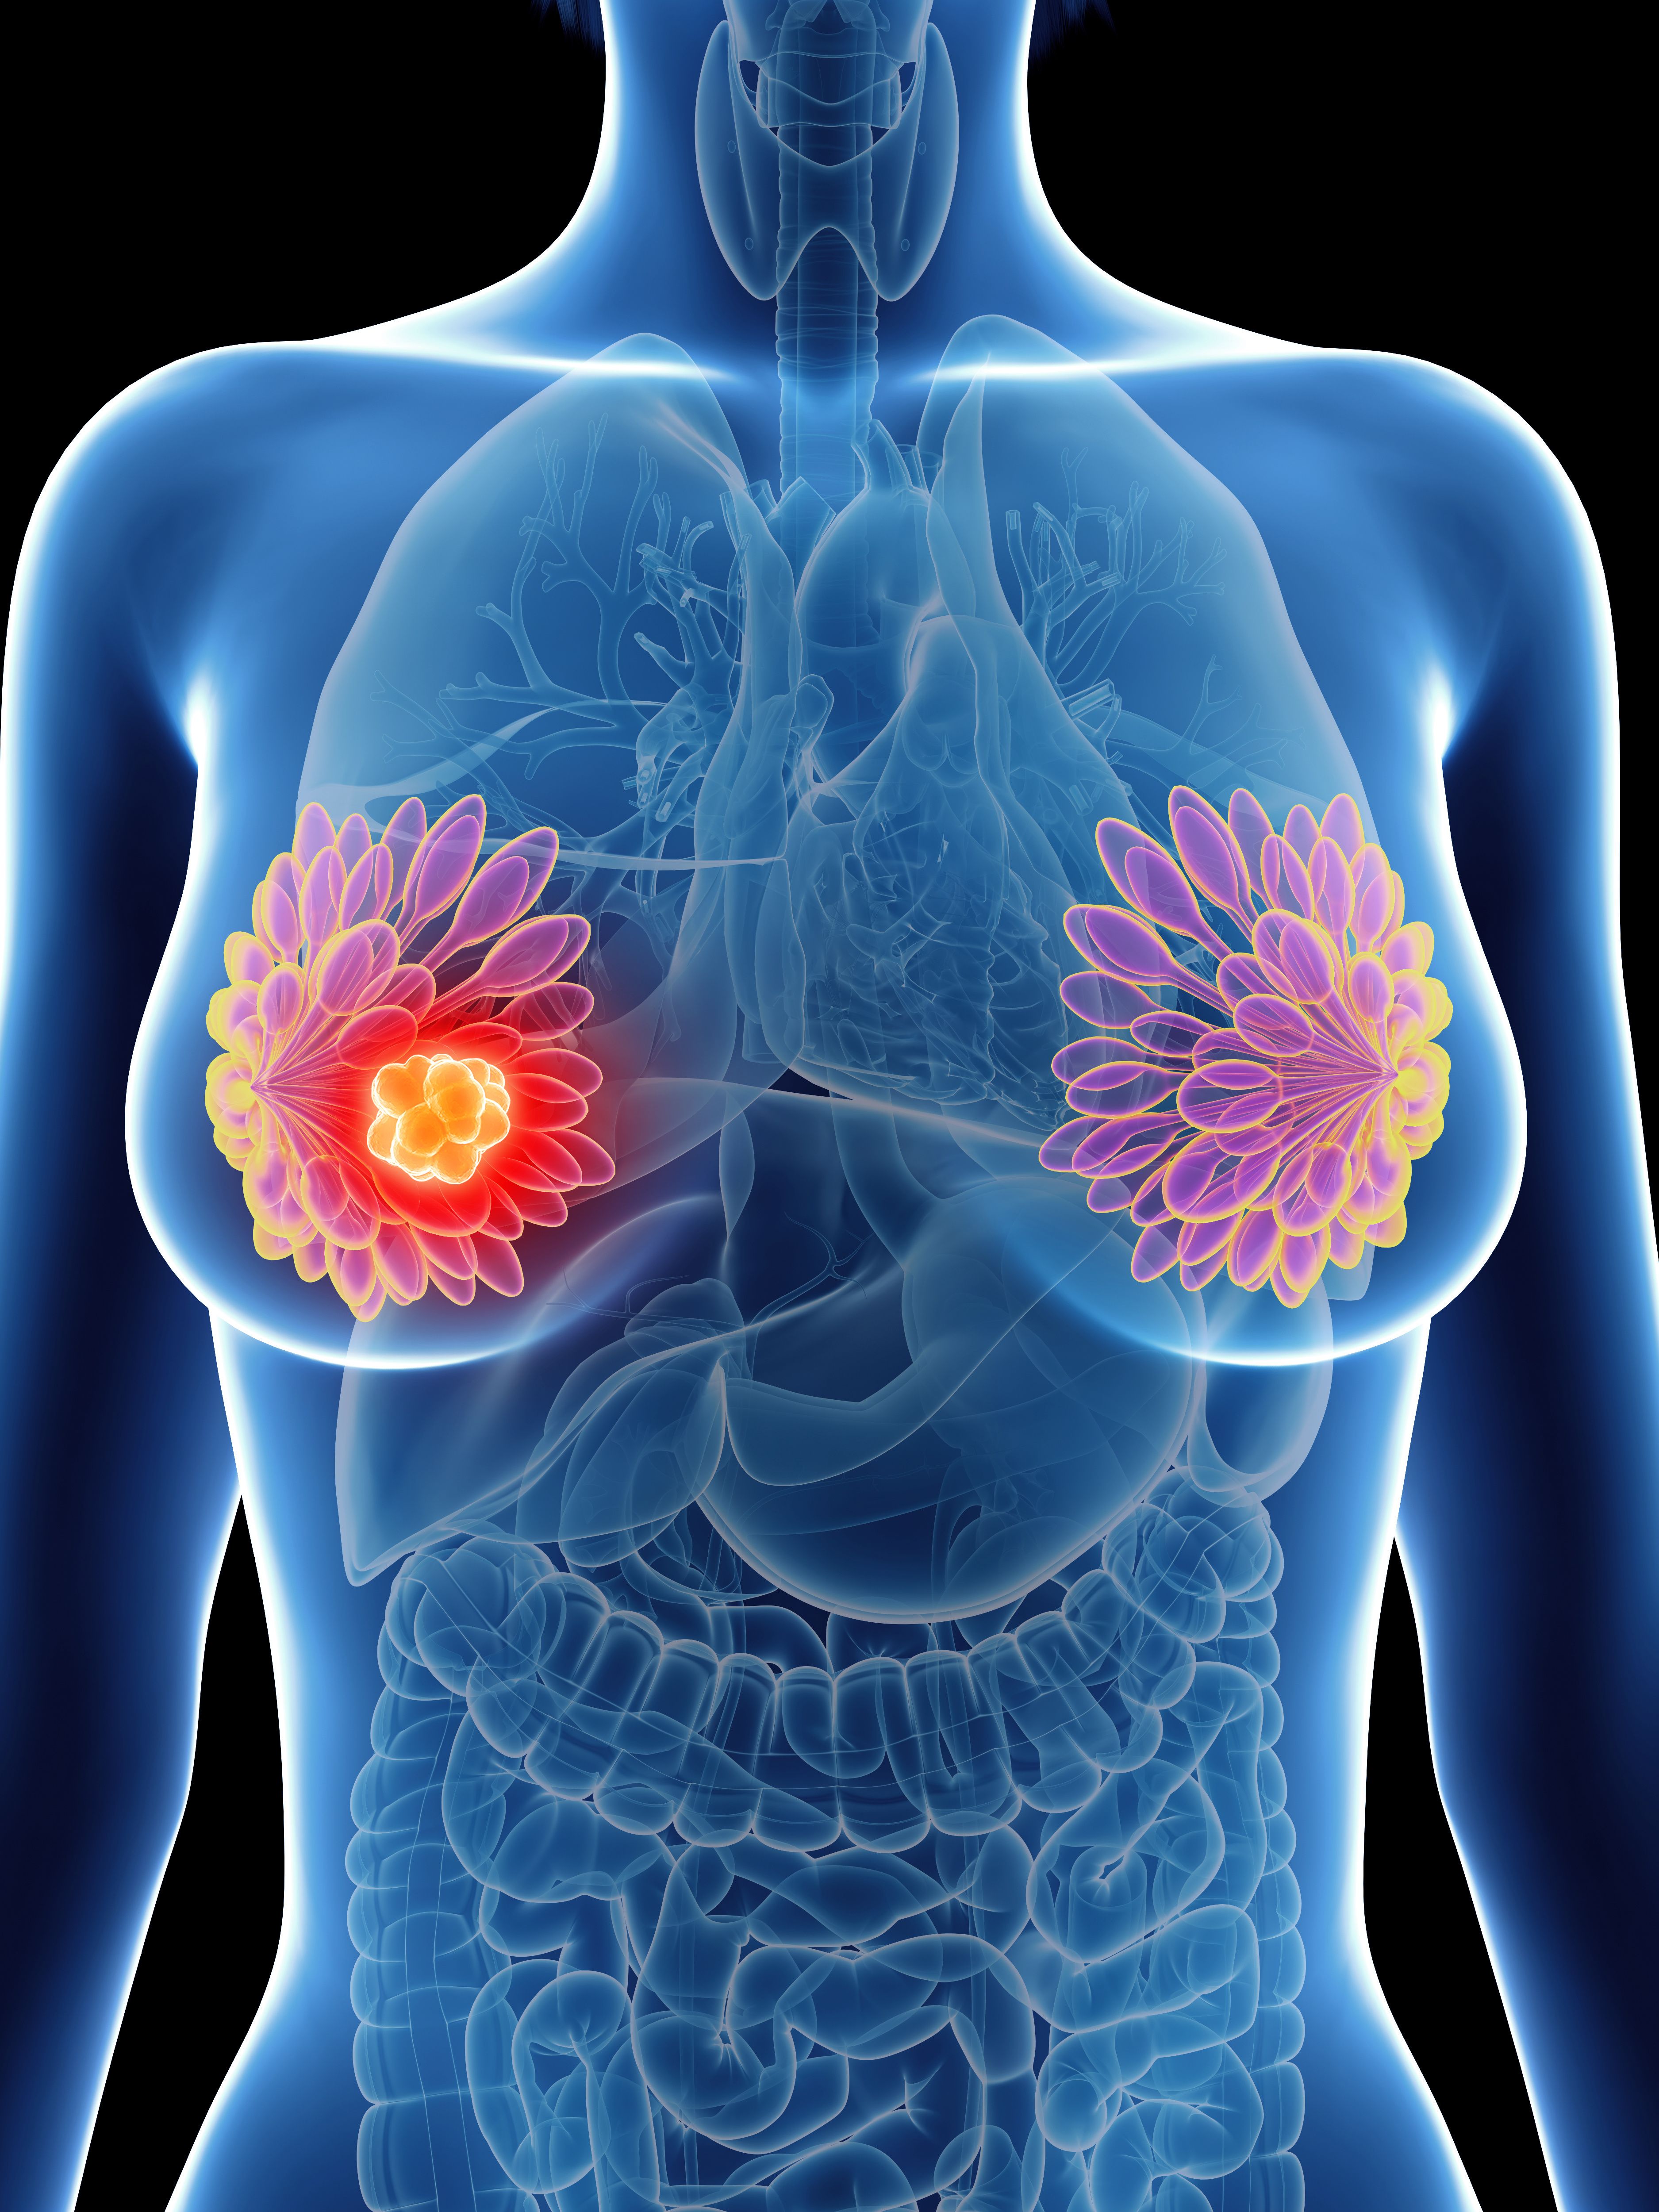 La deficiencia de vitamina D puede aumentar el riesgo de neuropatía inducida por la quimioterapia en el cáncer de mama